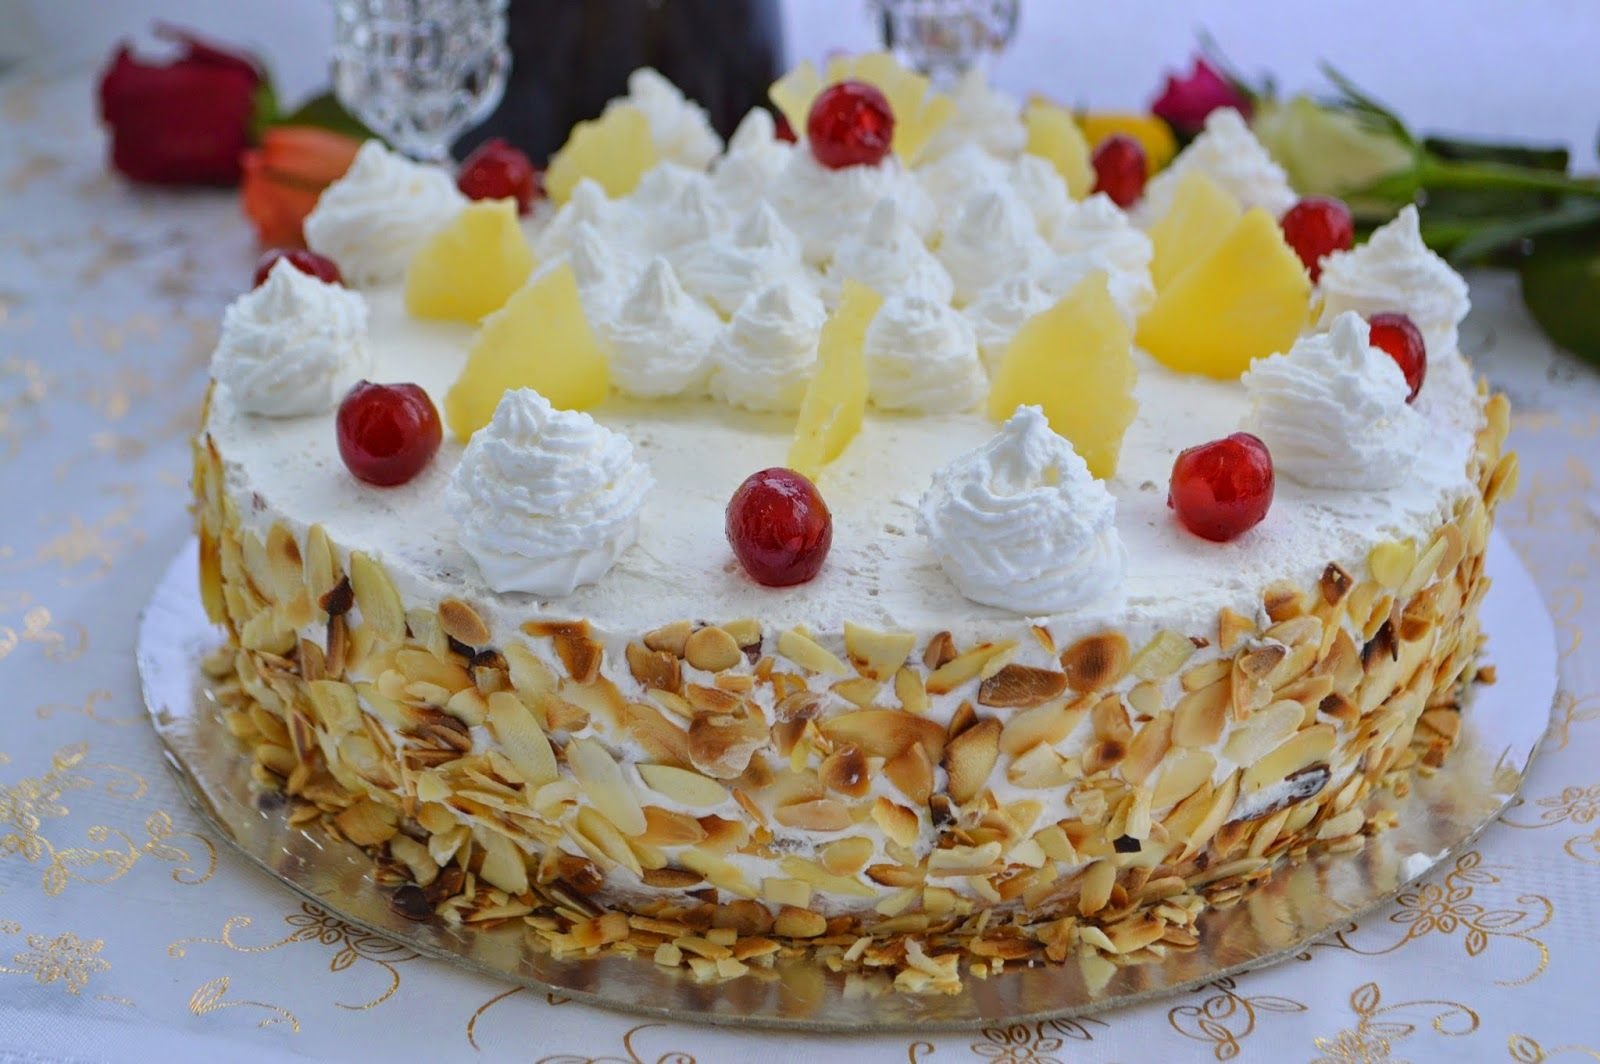 Фото торта со сливками. Итальянский сливочный торт. Торт брызги шампанского. Бисквитный торт с маскарпоне и ананасами. Наполеон с маскарпоне и сливками.